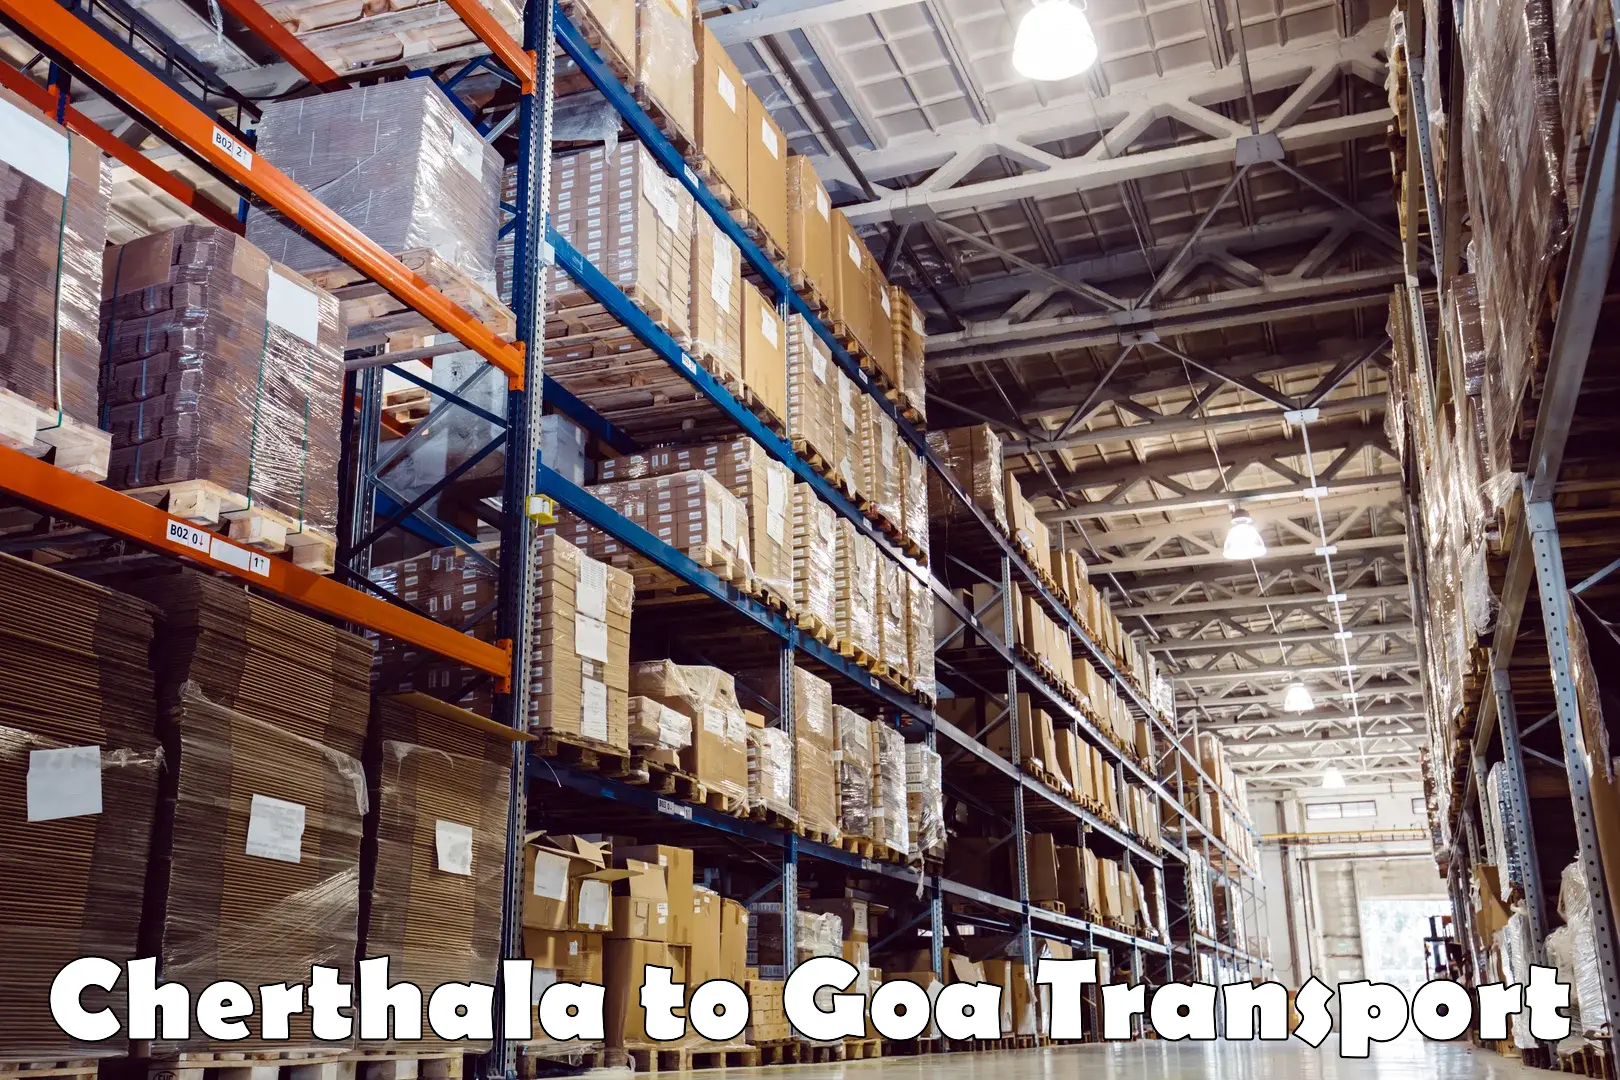 Express transport services Cherthala to Goa